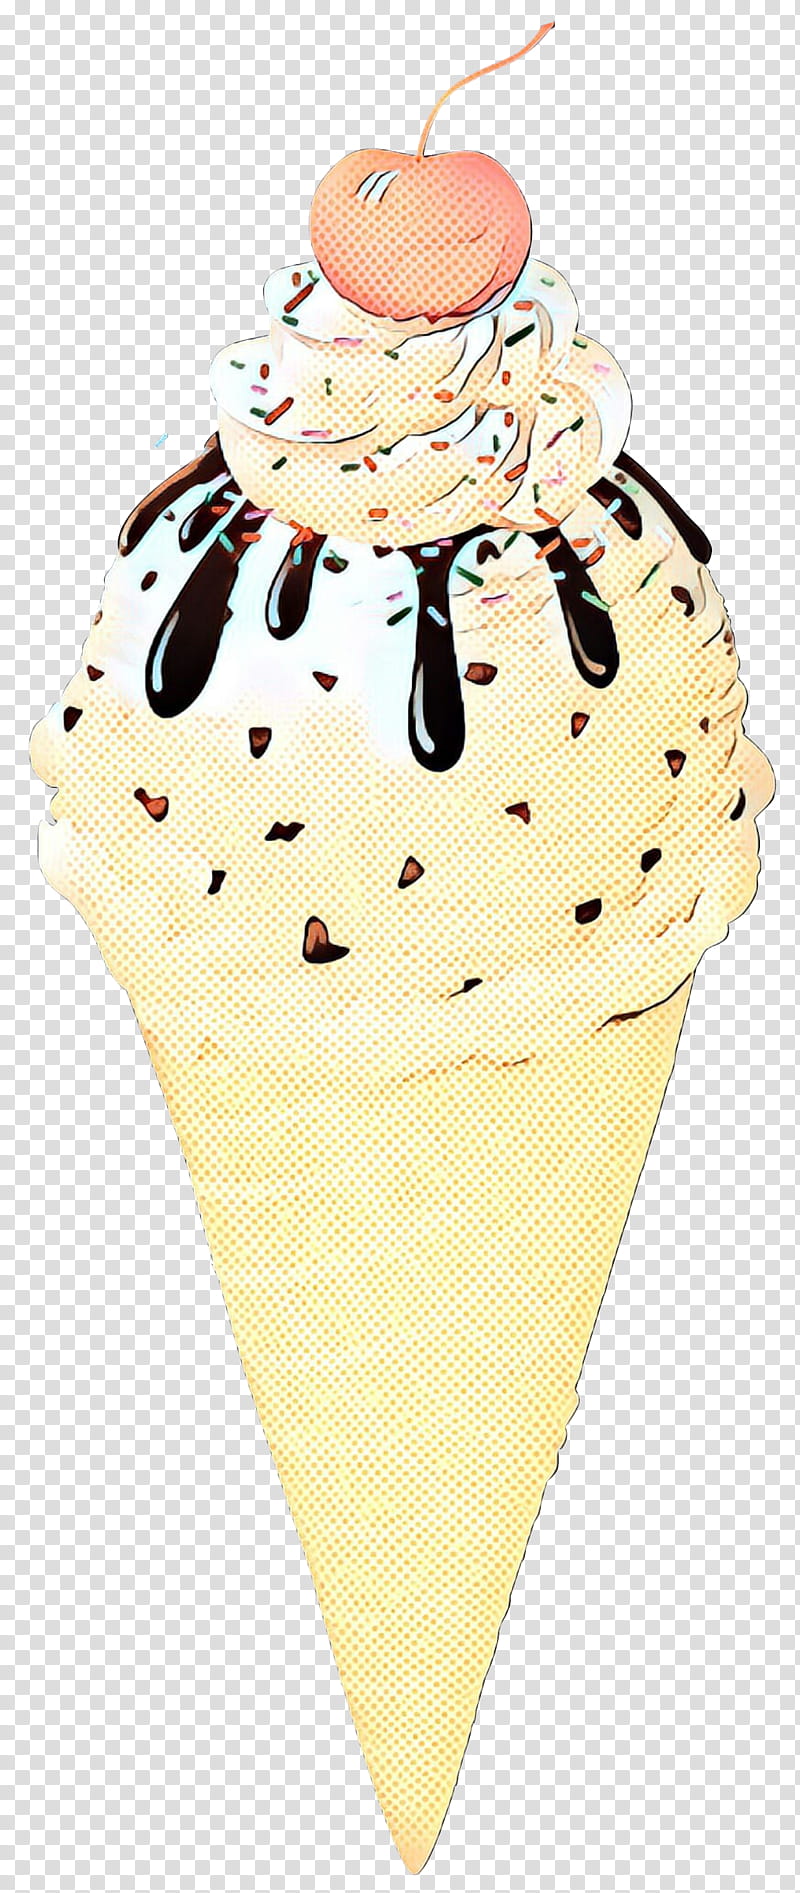 Ice Cream Cone, Ice Cream Cones, Food, Cupcake, Sundae, Dessert, Ice Cream Parlor, Chocolate transparent background PNG clipart